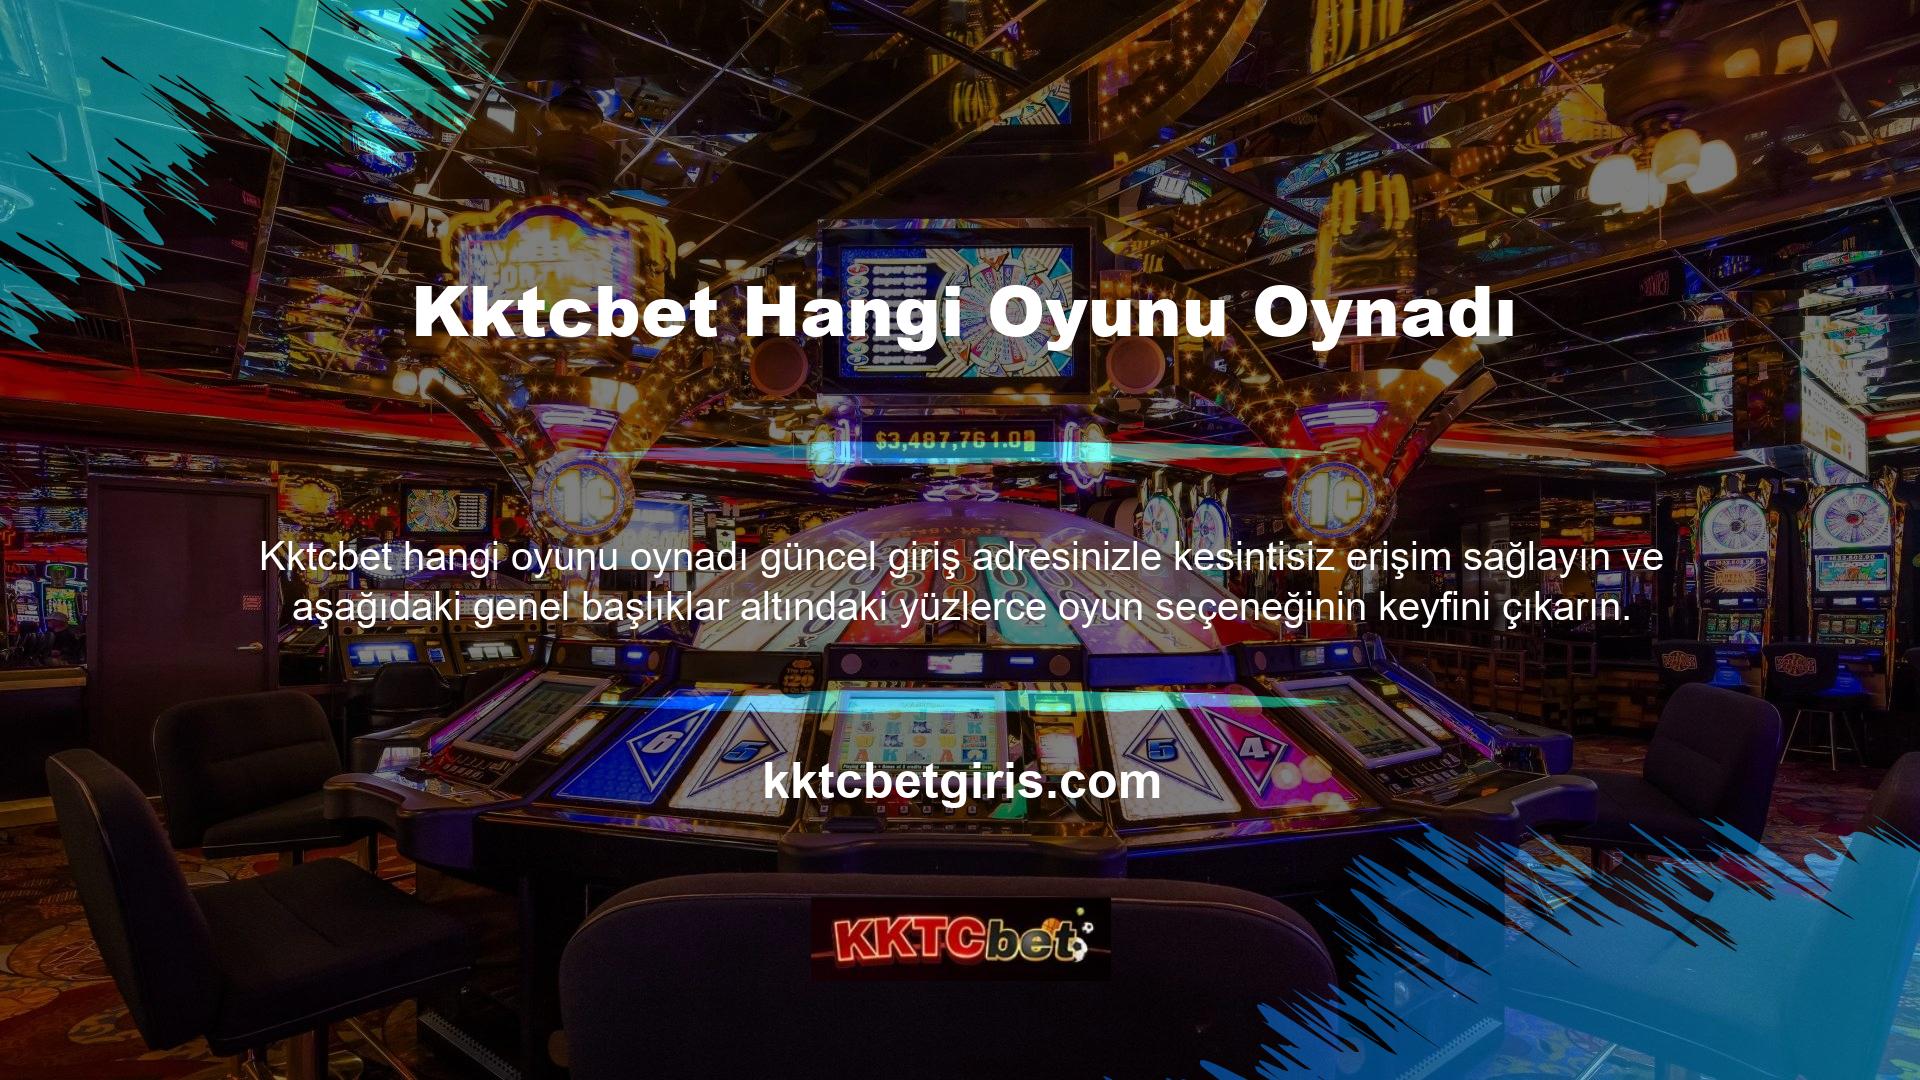 Canlı Bahis
	Spor bahisleri
	Spor
	Canlı Casino
	Slot Makinesi
	Fantezi Spor
	Slot Makinesi
	Bingo

Spor Oyunları ve Canlı Bahisler bölümümüzde sporla ilgili sonuçların çıkma olasılığı yüksek olan ilgili oyunları ve bahisleri bulun